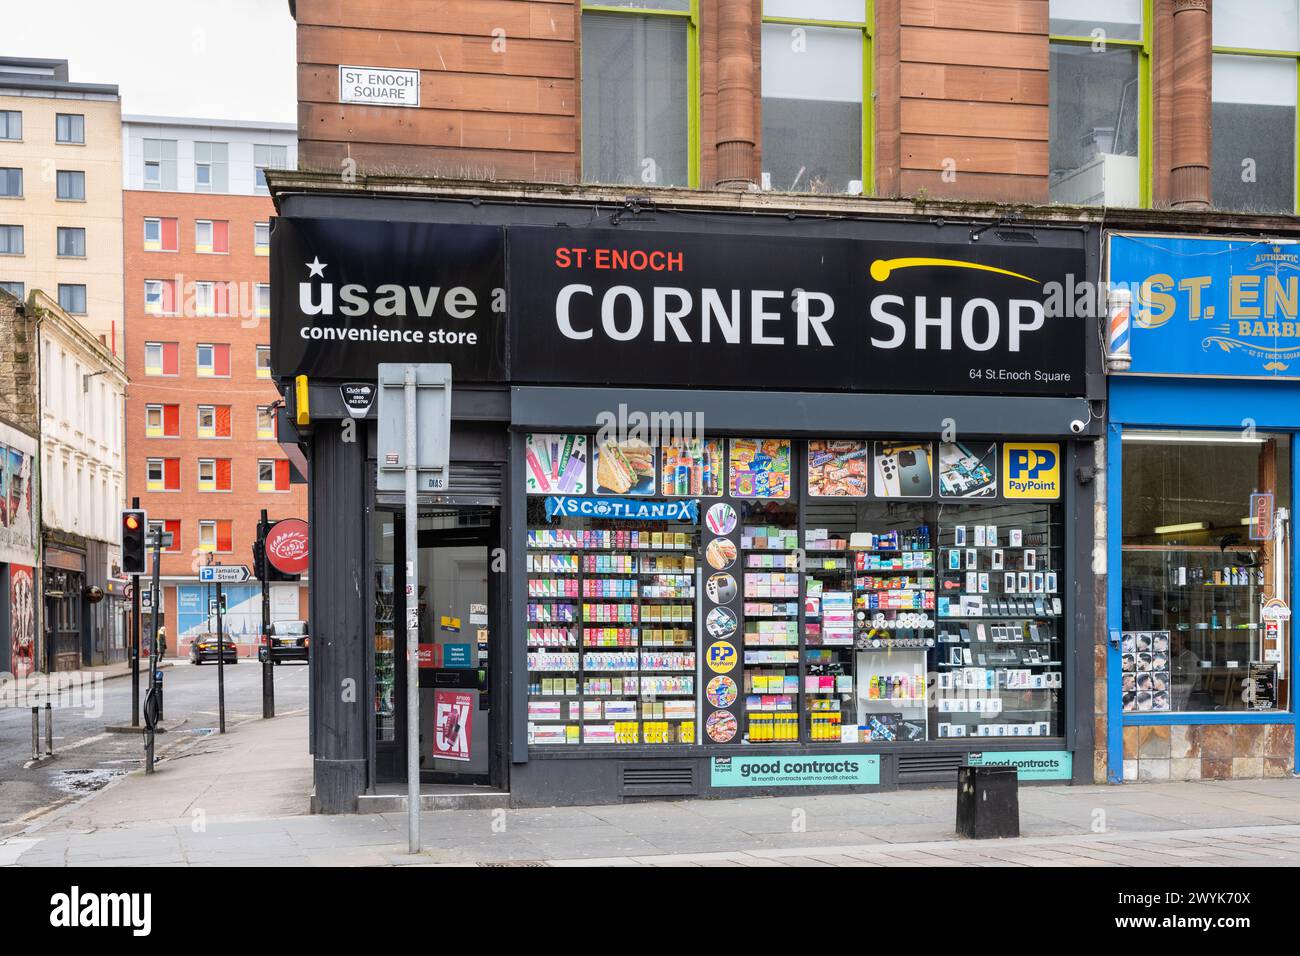 Corner Shop Glasgow - Usave St Enoch Corner Shop, Glasgow, Scozia, Regno Unito Foto Stock